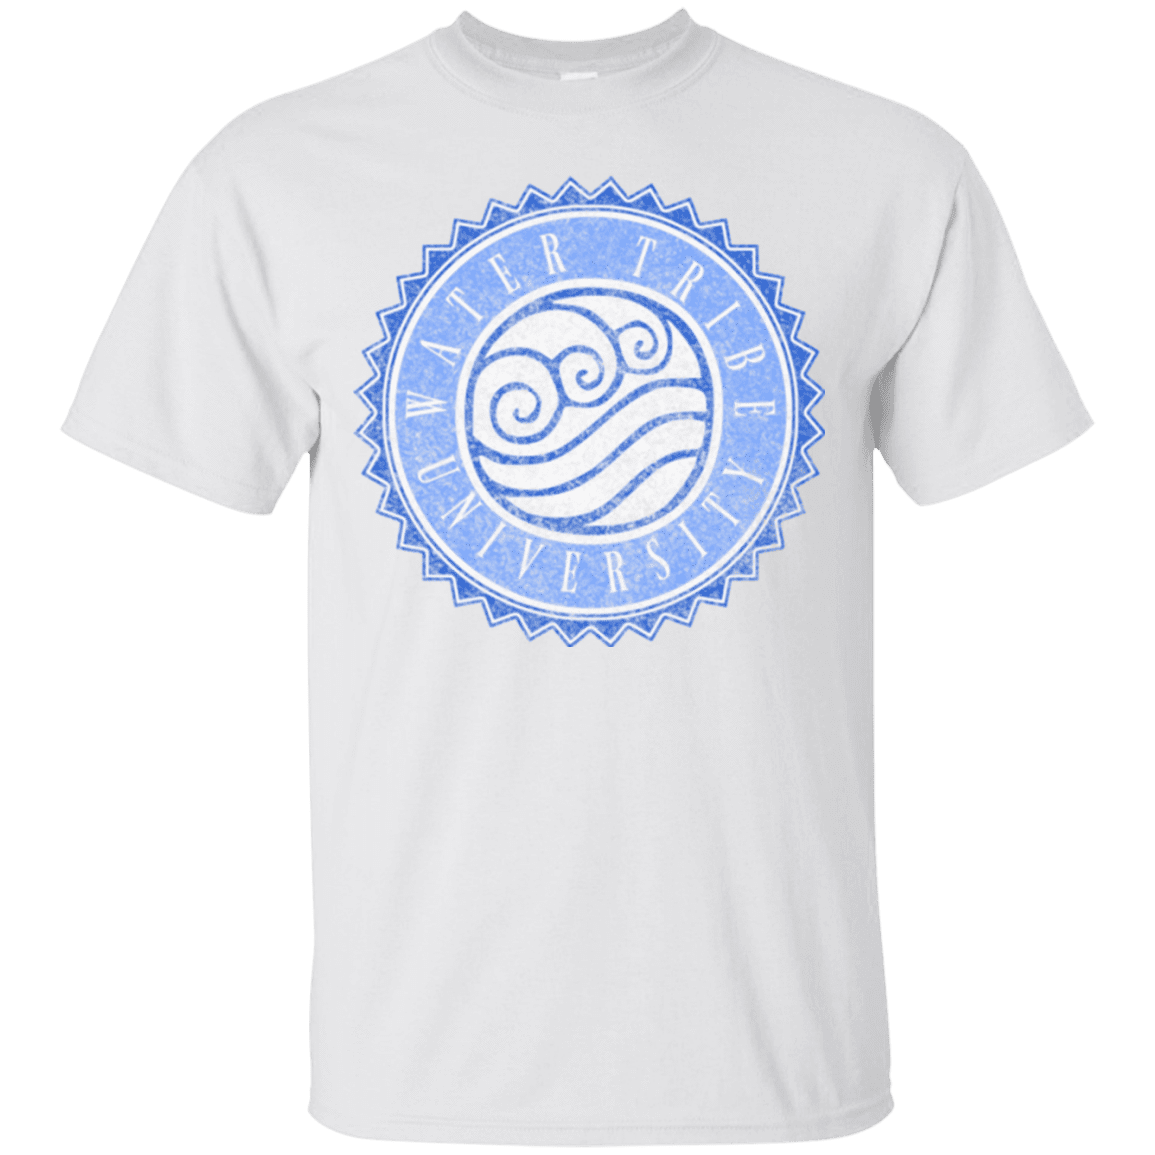 T-Shirts White / Small Water tribe university T-Shirt